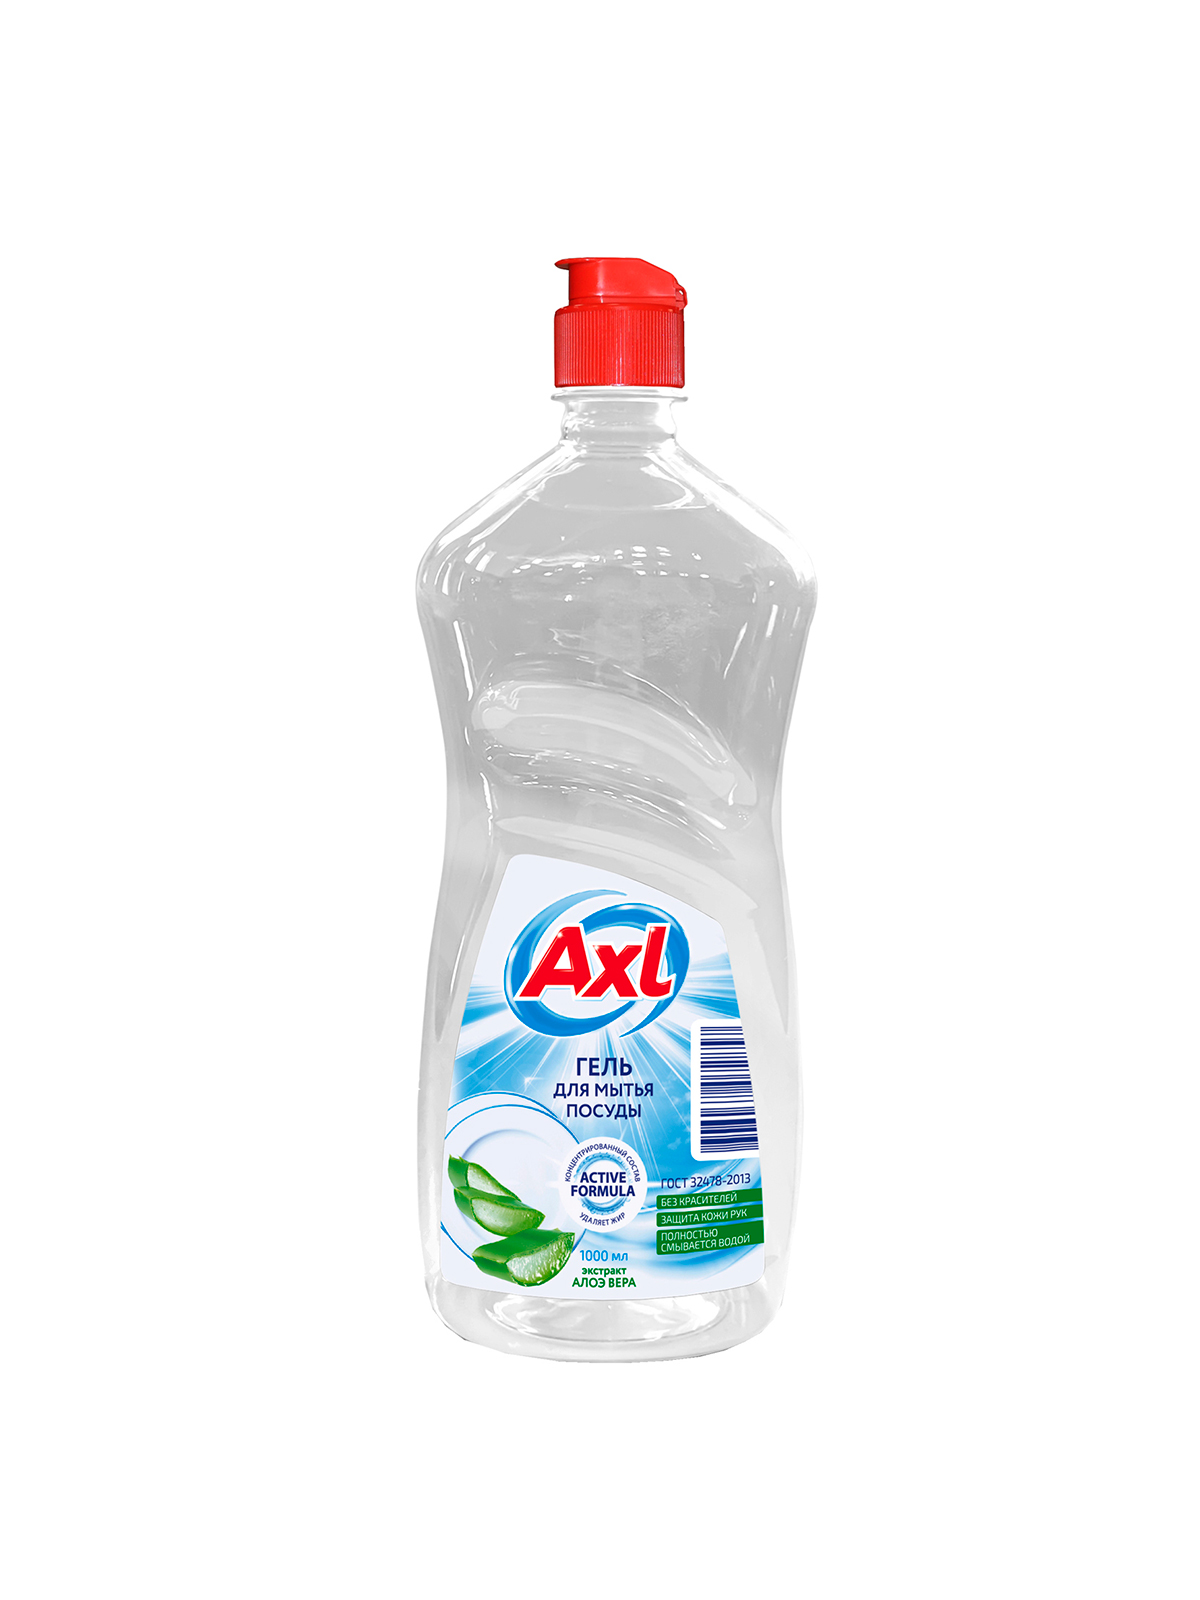 Средство моющее для мытья посуды (гель) "AXL" 1л.